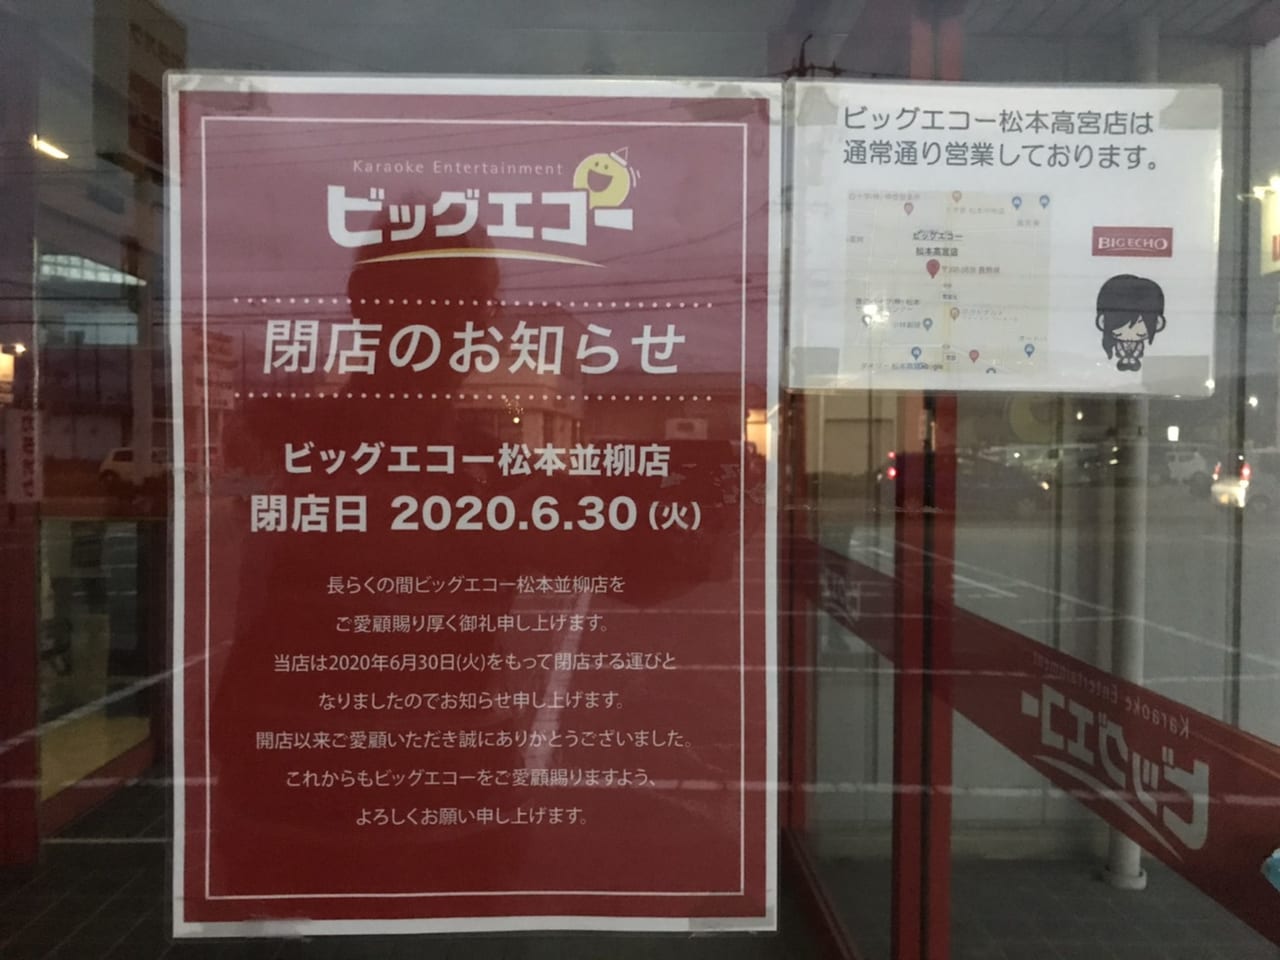 松本市 松本市並柳にあったビッグエコー並柳店が閉店していたことがわかりました 号外net 松本